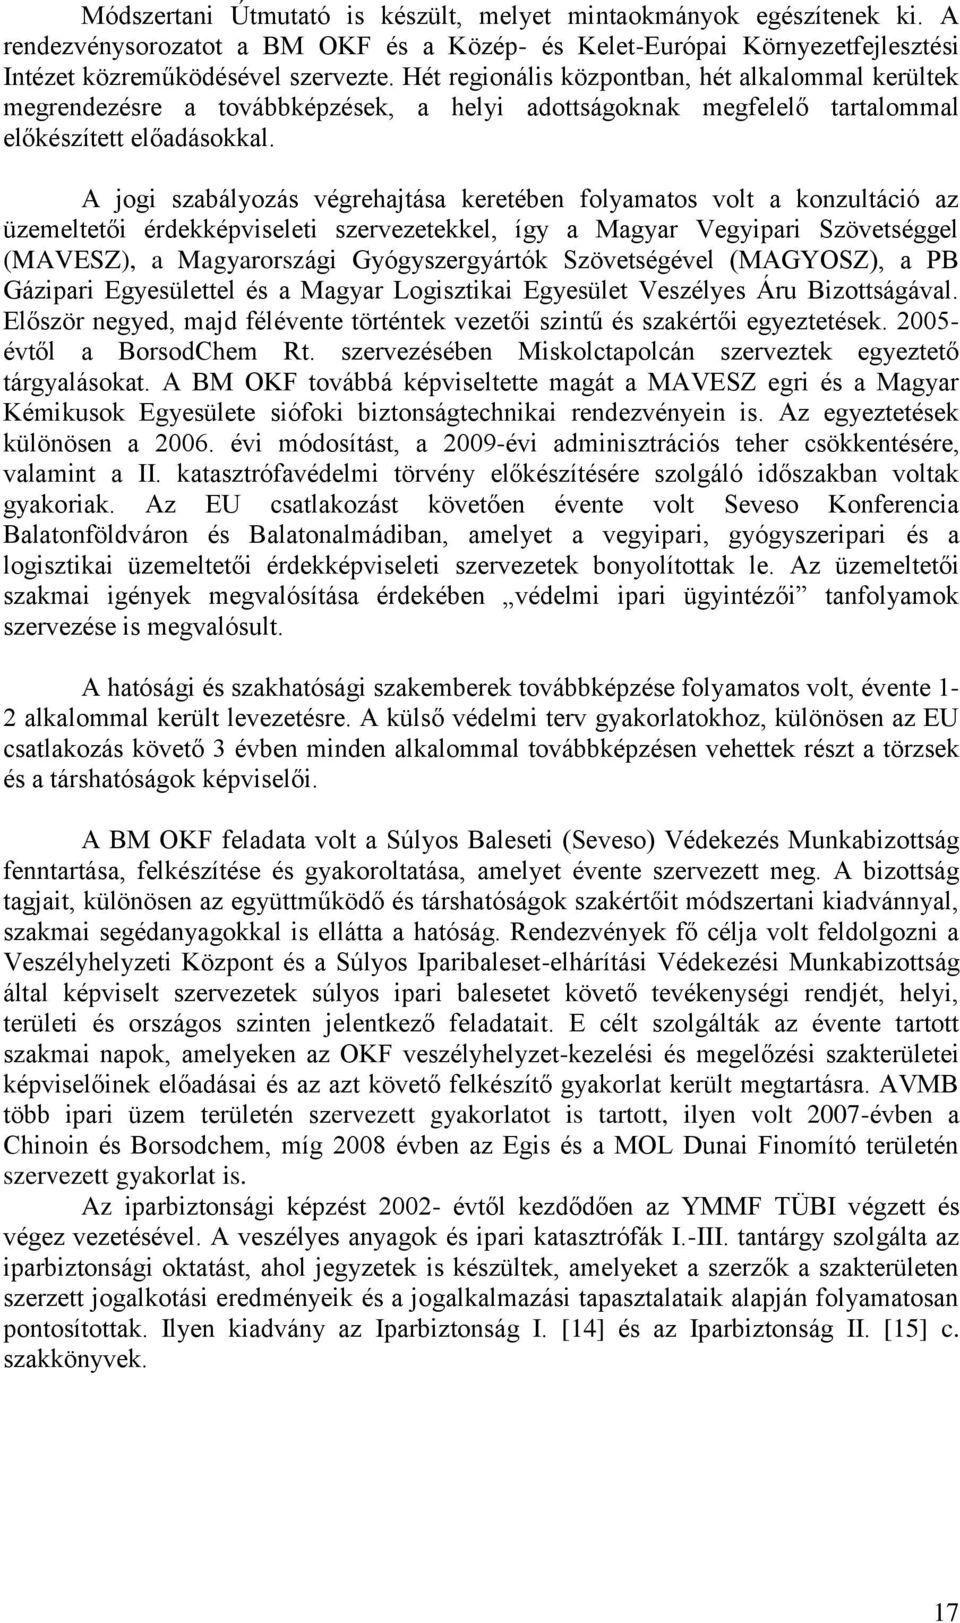 A jogi szabályozás végrehajtása keretében folyamatos volt a konzultáció az üzemeltetői érdekképviseleti szervezetekkel, így a Magyar Vegyipari Szövetséggel (MAVESZ), a Magyarországi Gyógyszergyártók